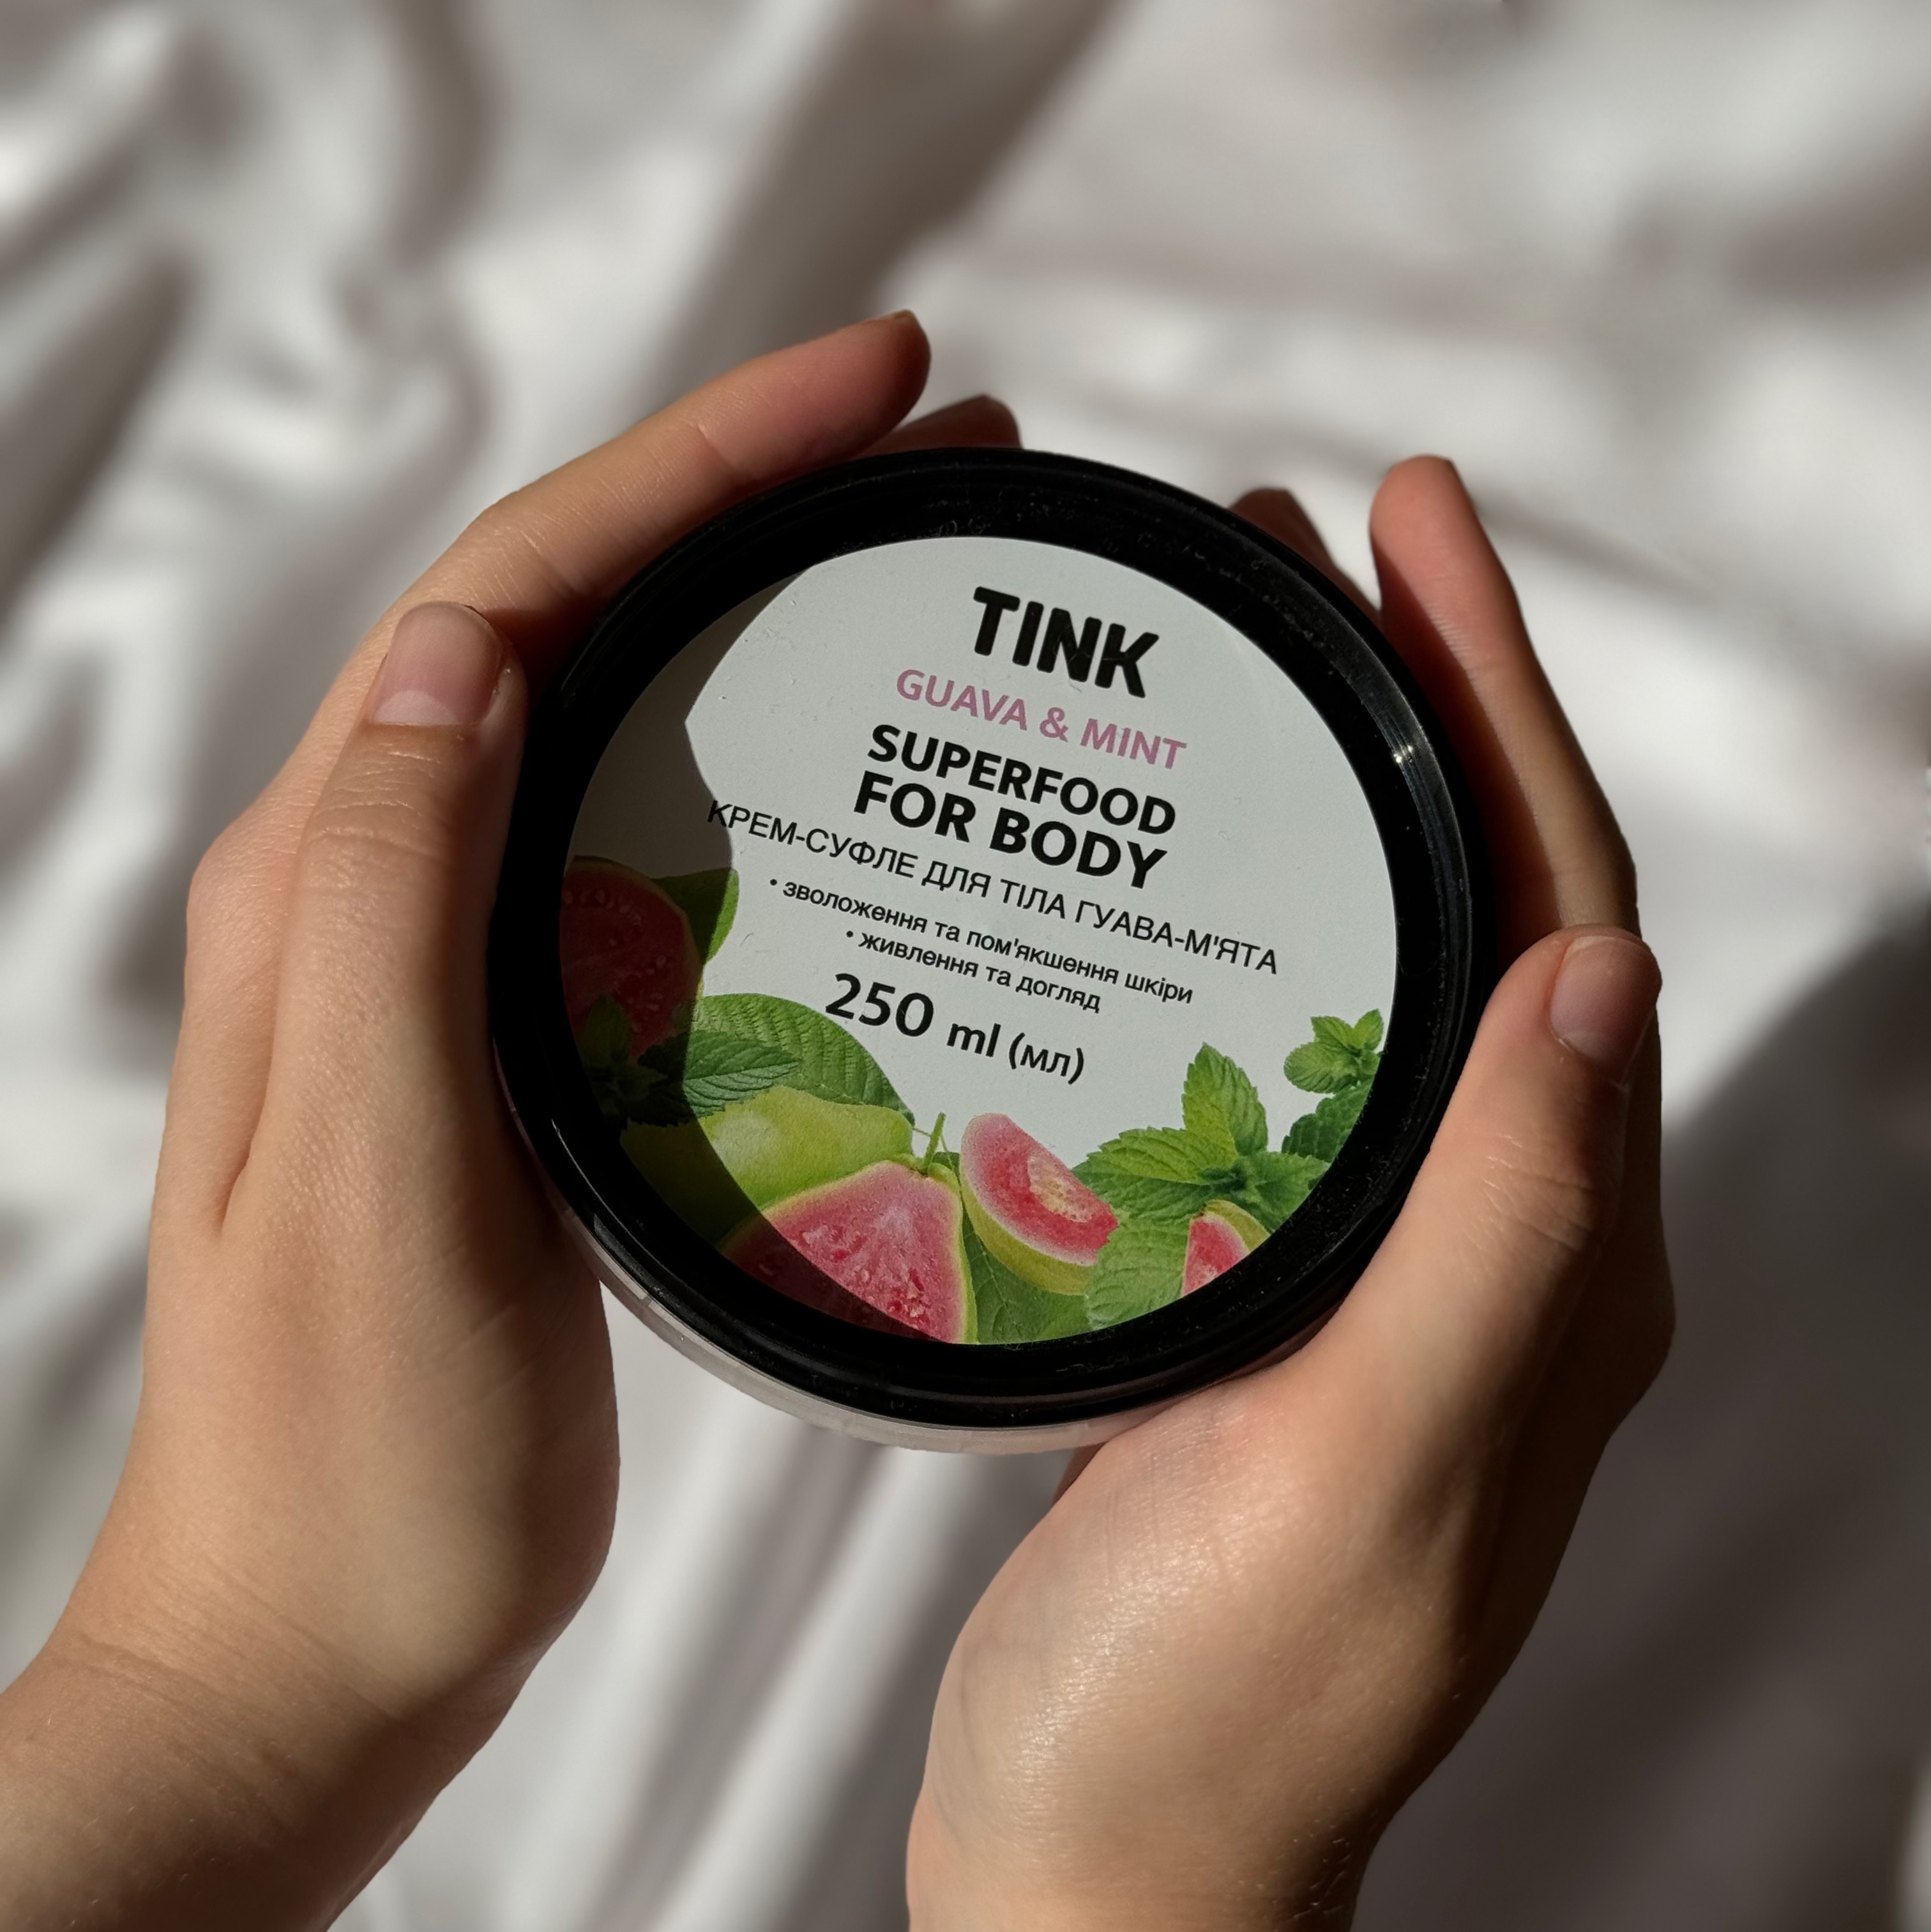 Part 2: Ідеальний дует для догляду за шкірою від Tink Superfood For Body